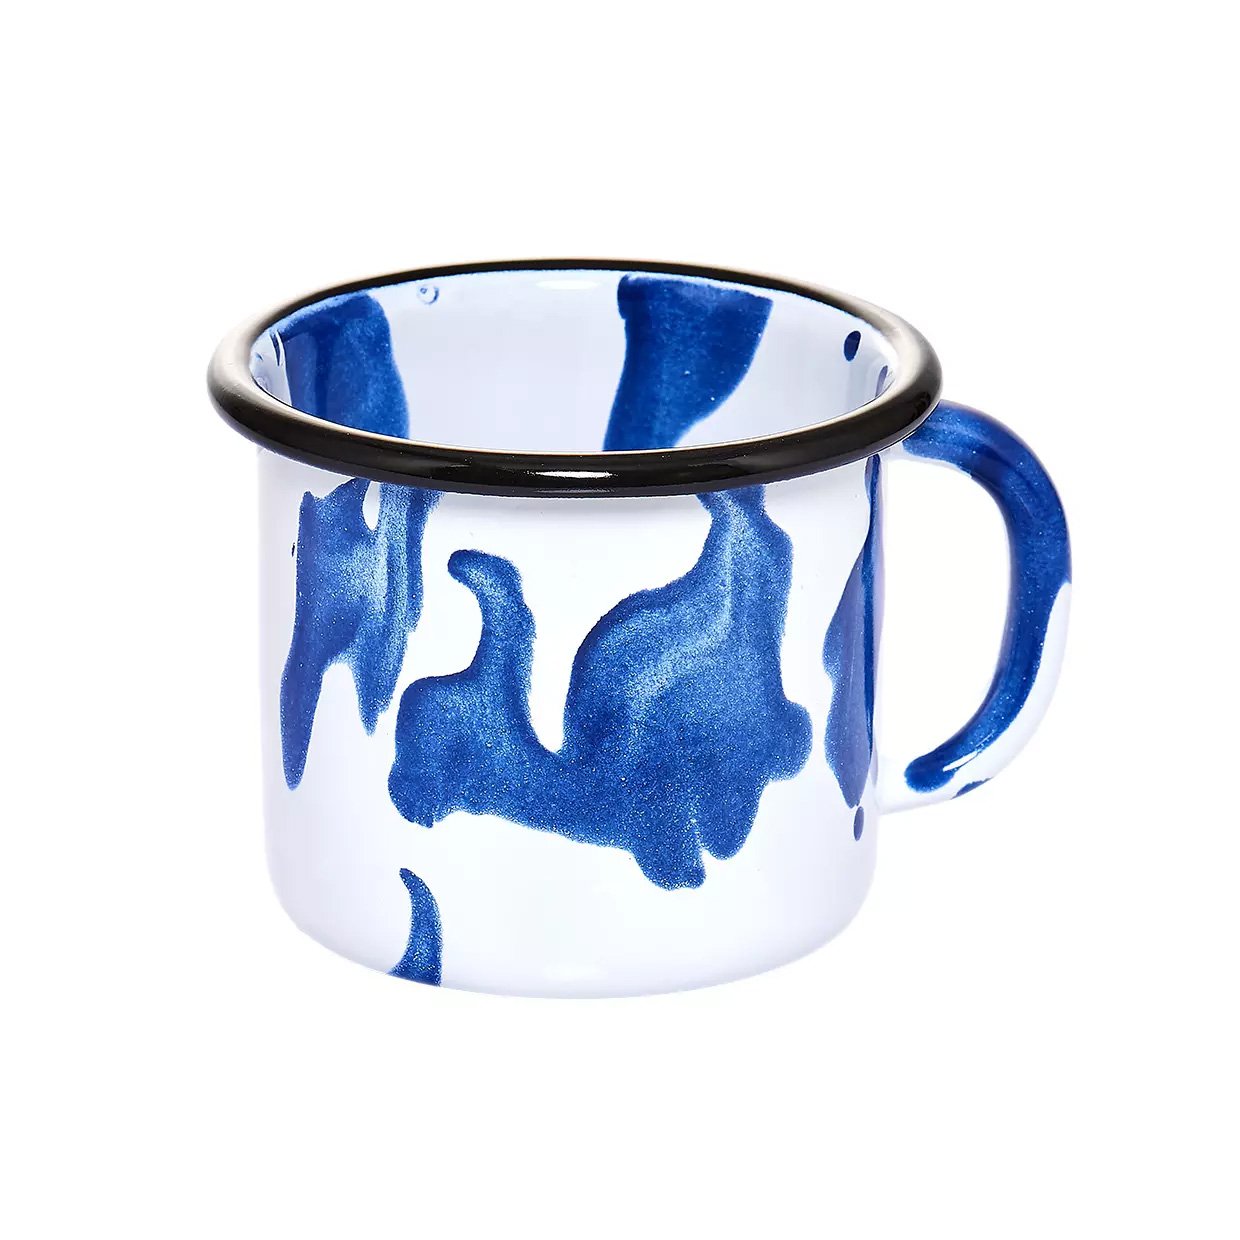 Blue and white mug product image